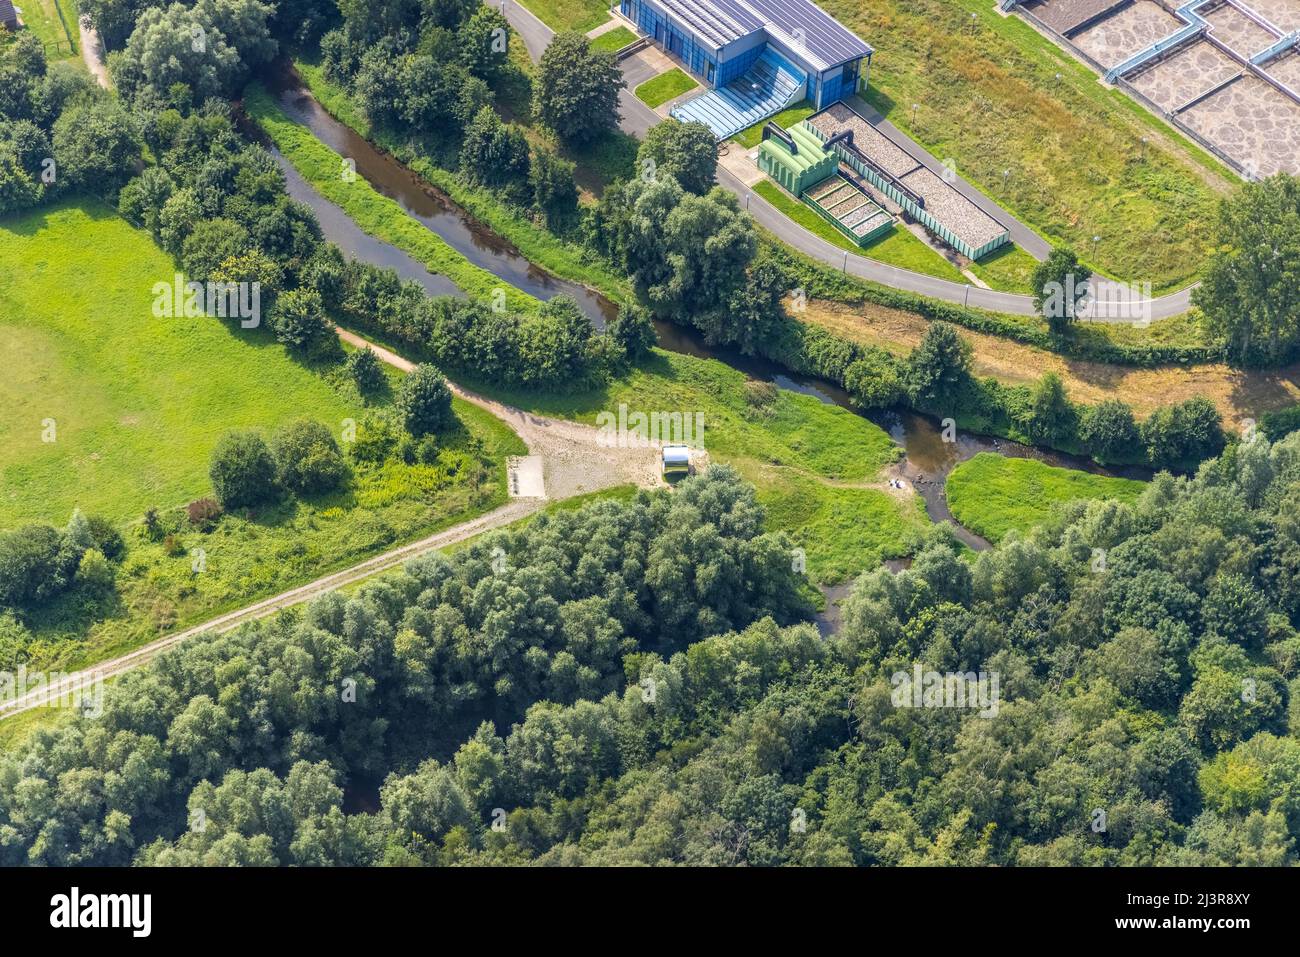 Vista aerea, stabilimento di depurazione di Kamen-Körnebach nel distretto di Westick a Kamen, regione della Ruhr, Renania settentrionale-Vestfalia, Germania, Luftbild, Sehenswü Foto Stock